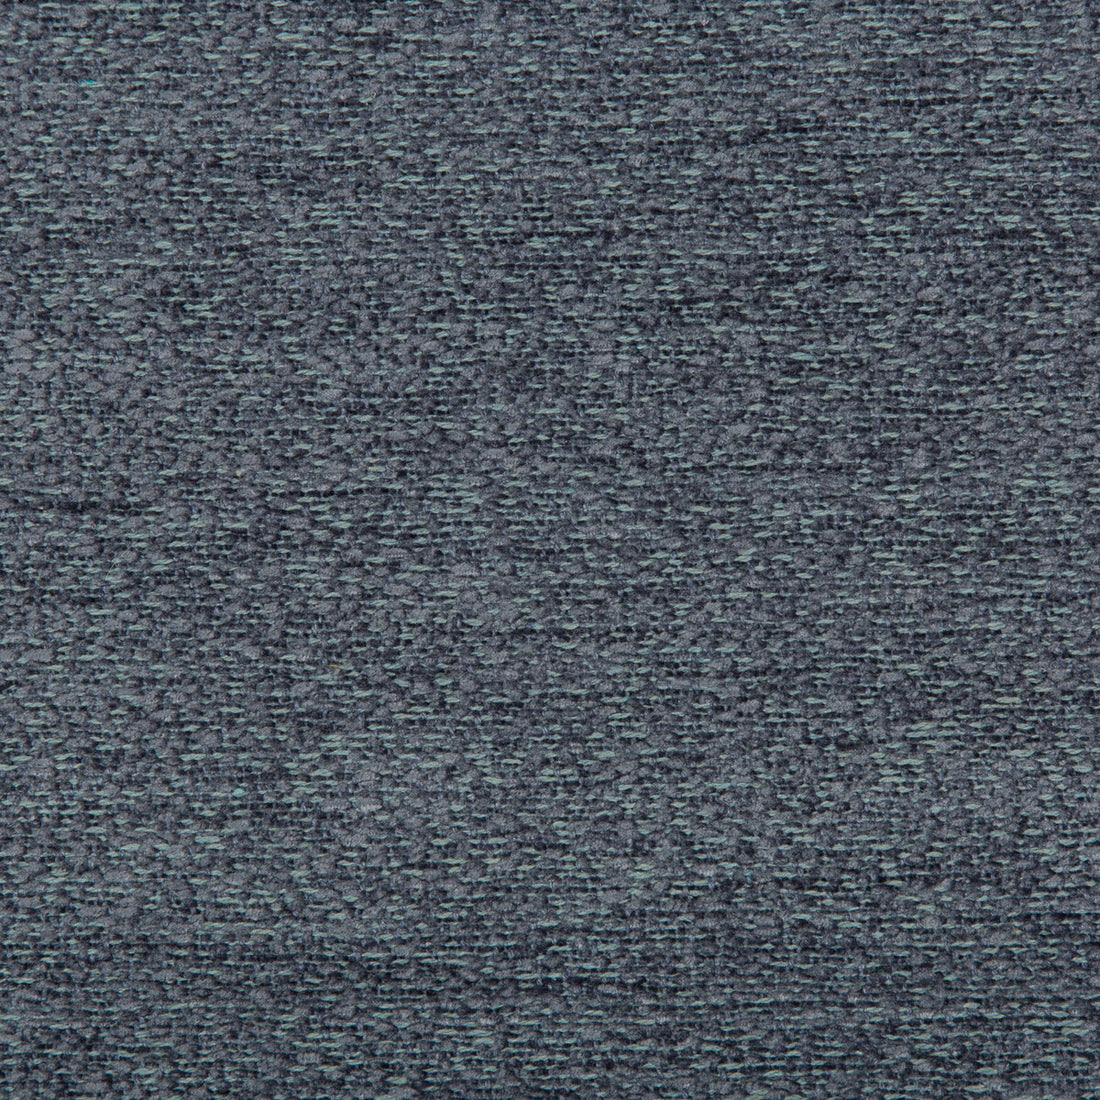 Kravet Design fabric in 35575-5 color - pattern 35575.5.0 - by Kravet Design